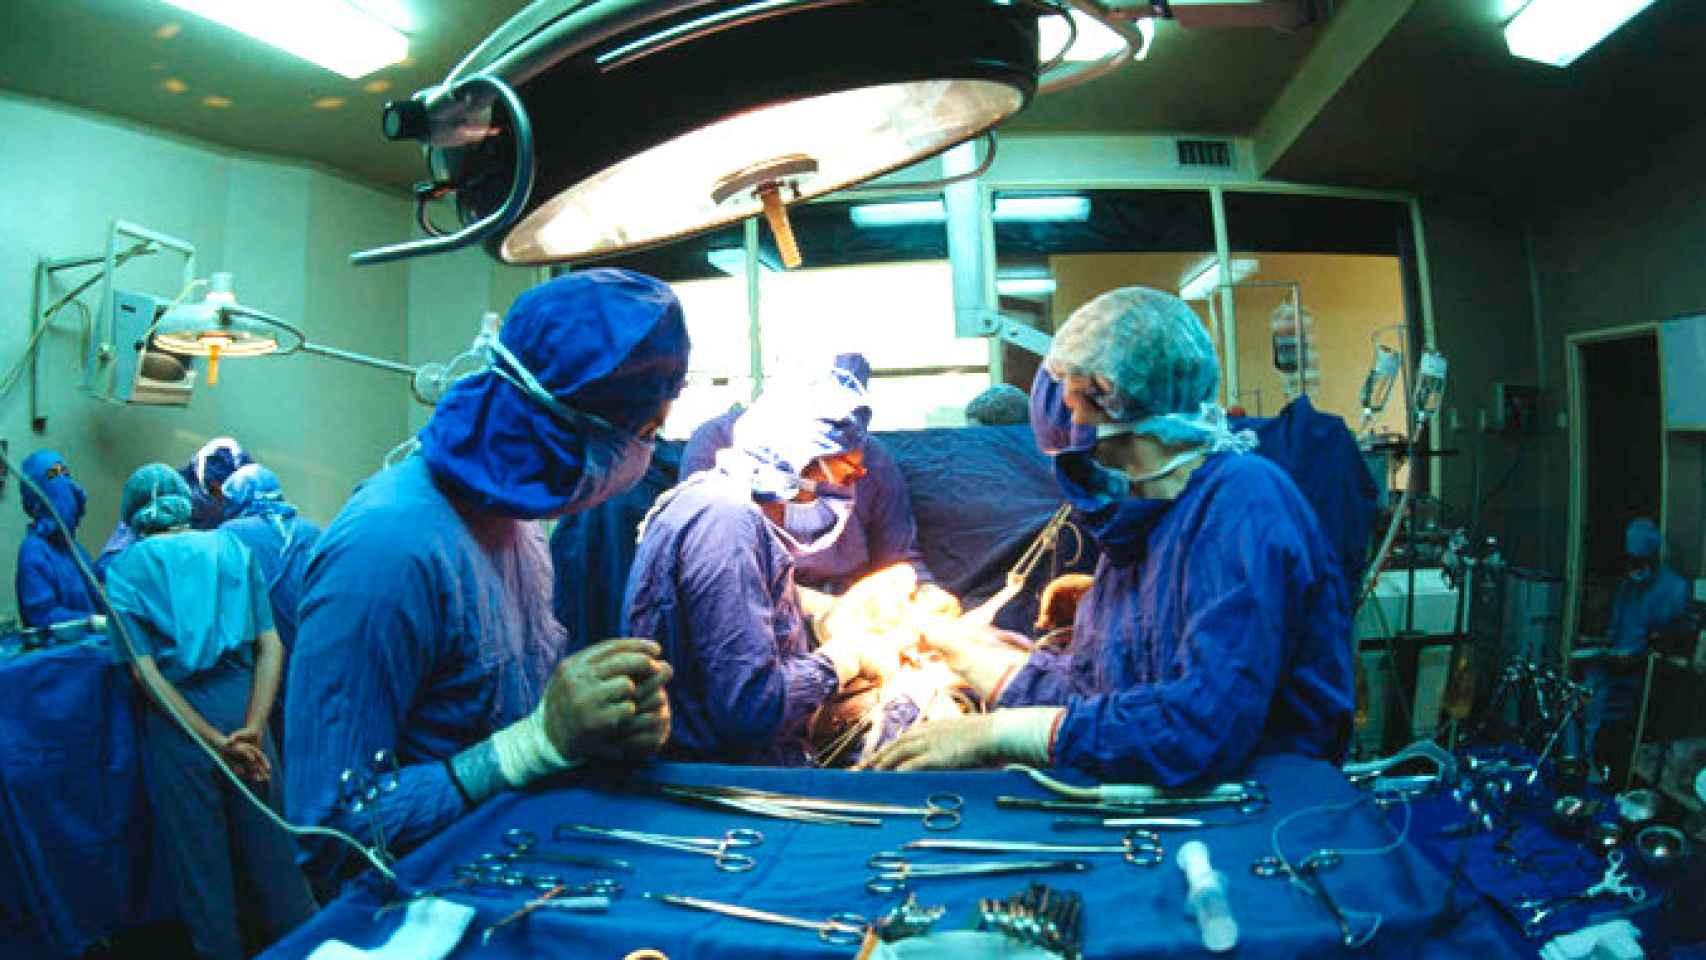 Varios médicos durante una operación, en imagen de archivo.